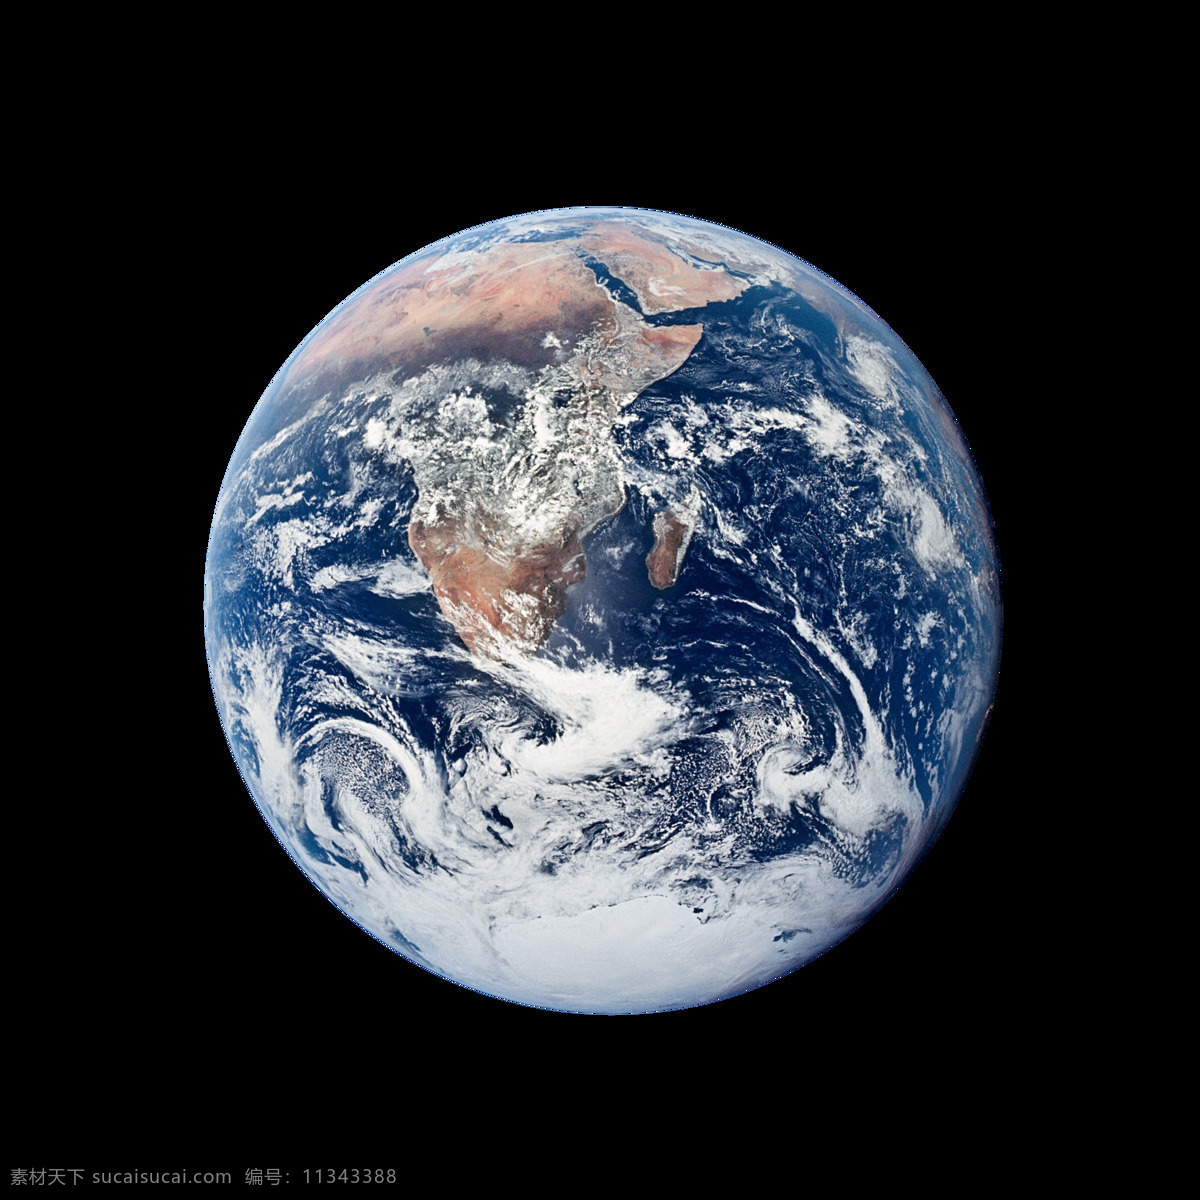 地球图片 地球 蓝色弹珠 地球免抠 地球免扣 免抠地球 免扣地球 免扣 免抠 未分类杂图